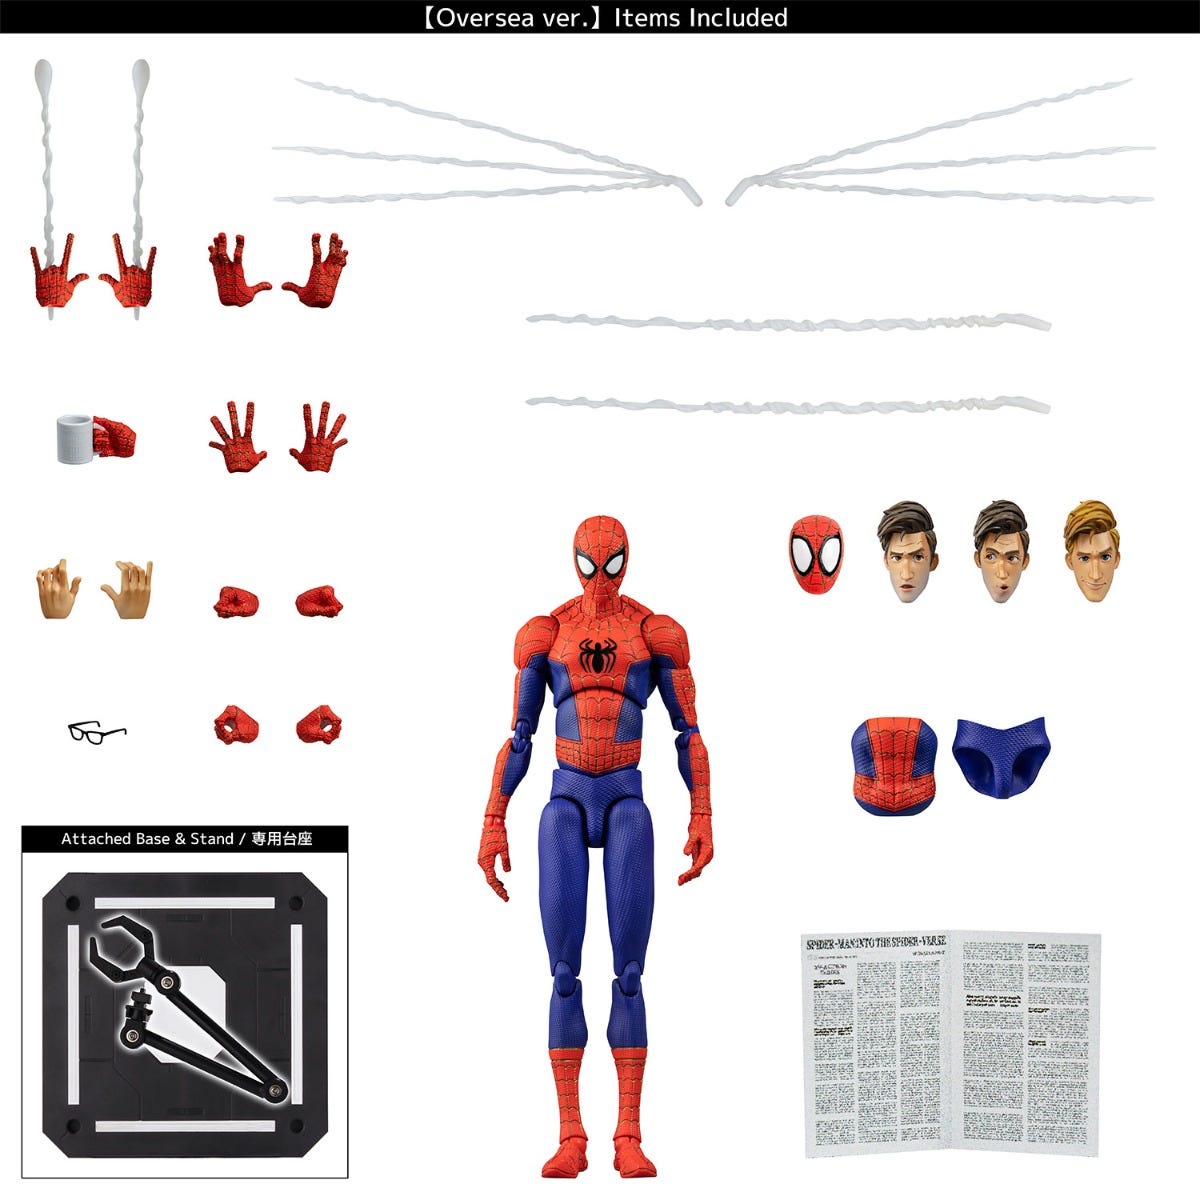 SV-Action Spider-Man Peter B Parker